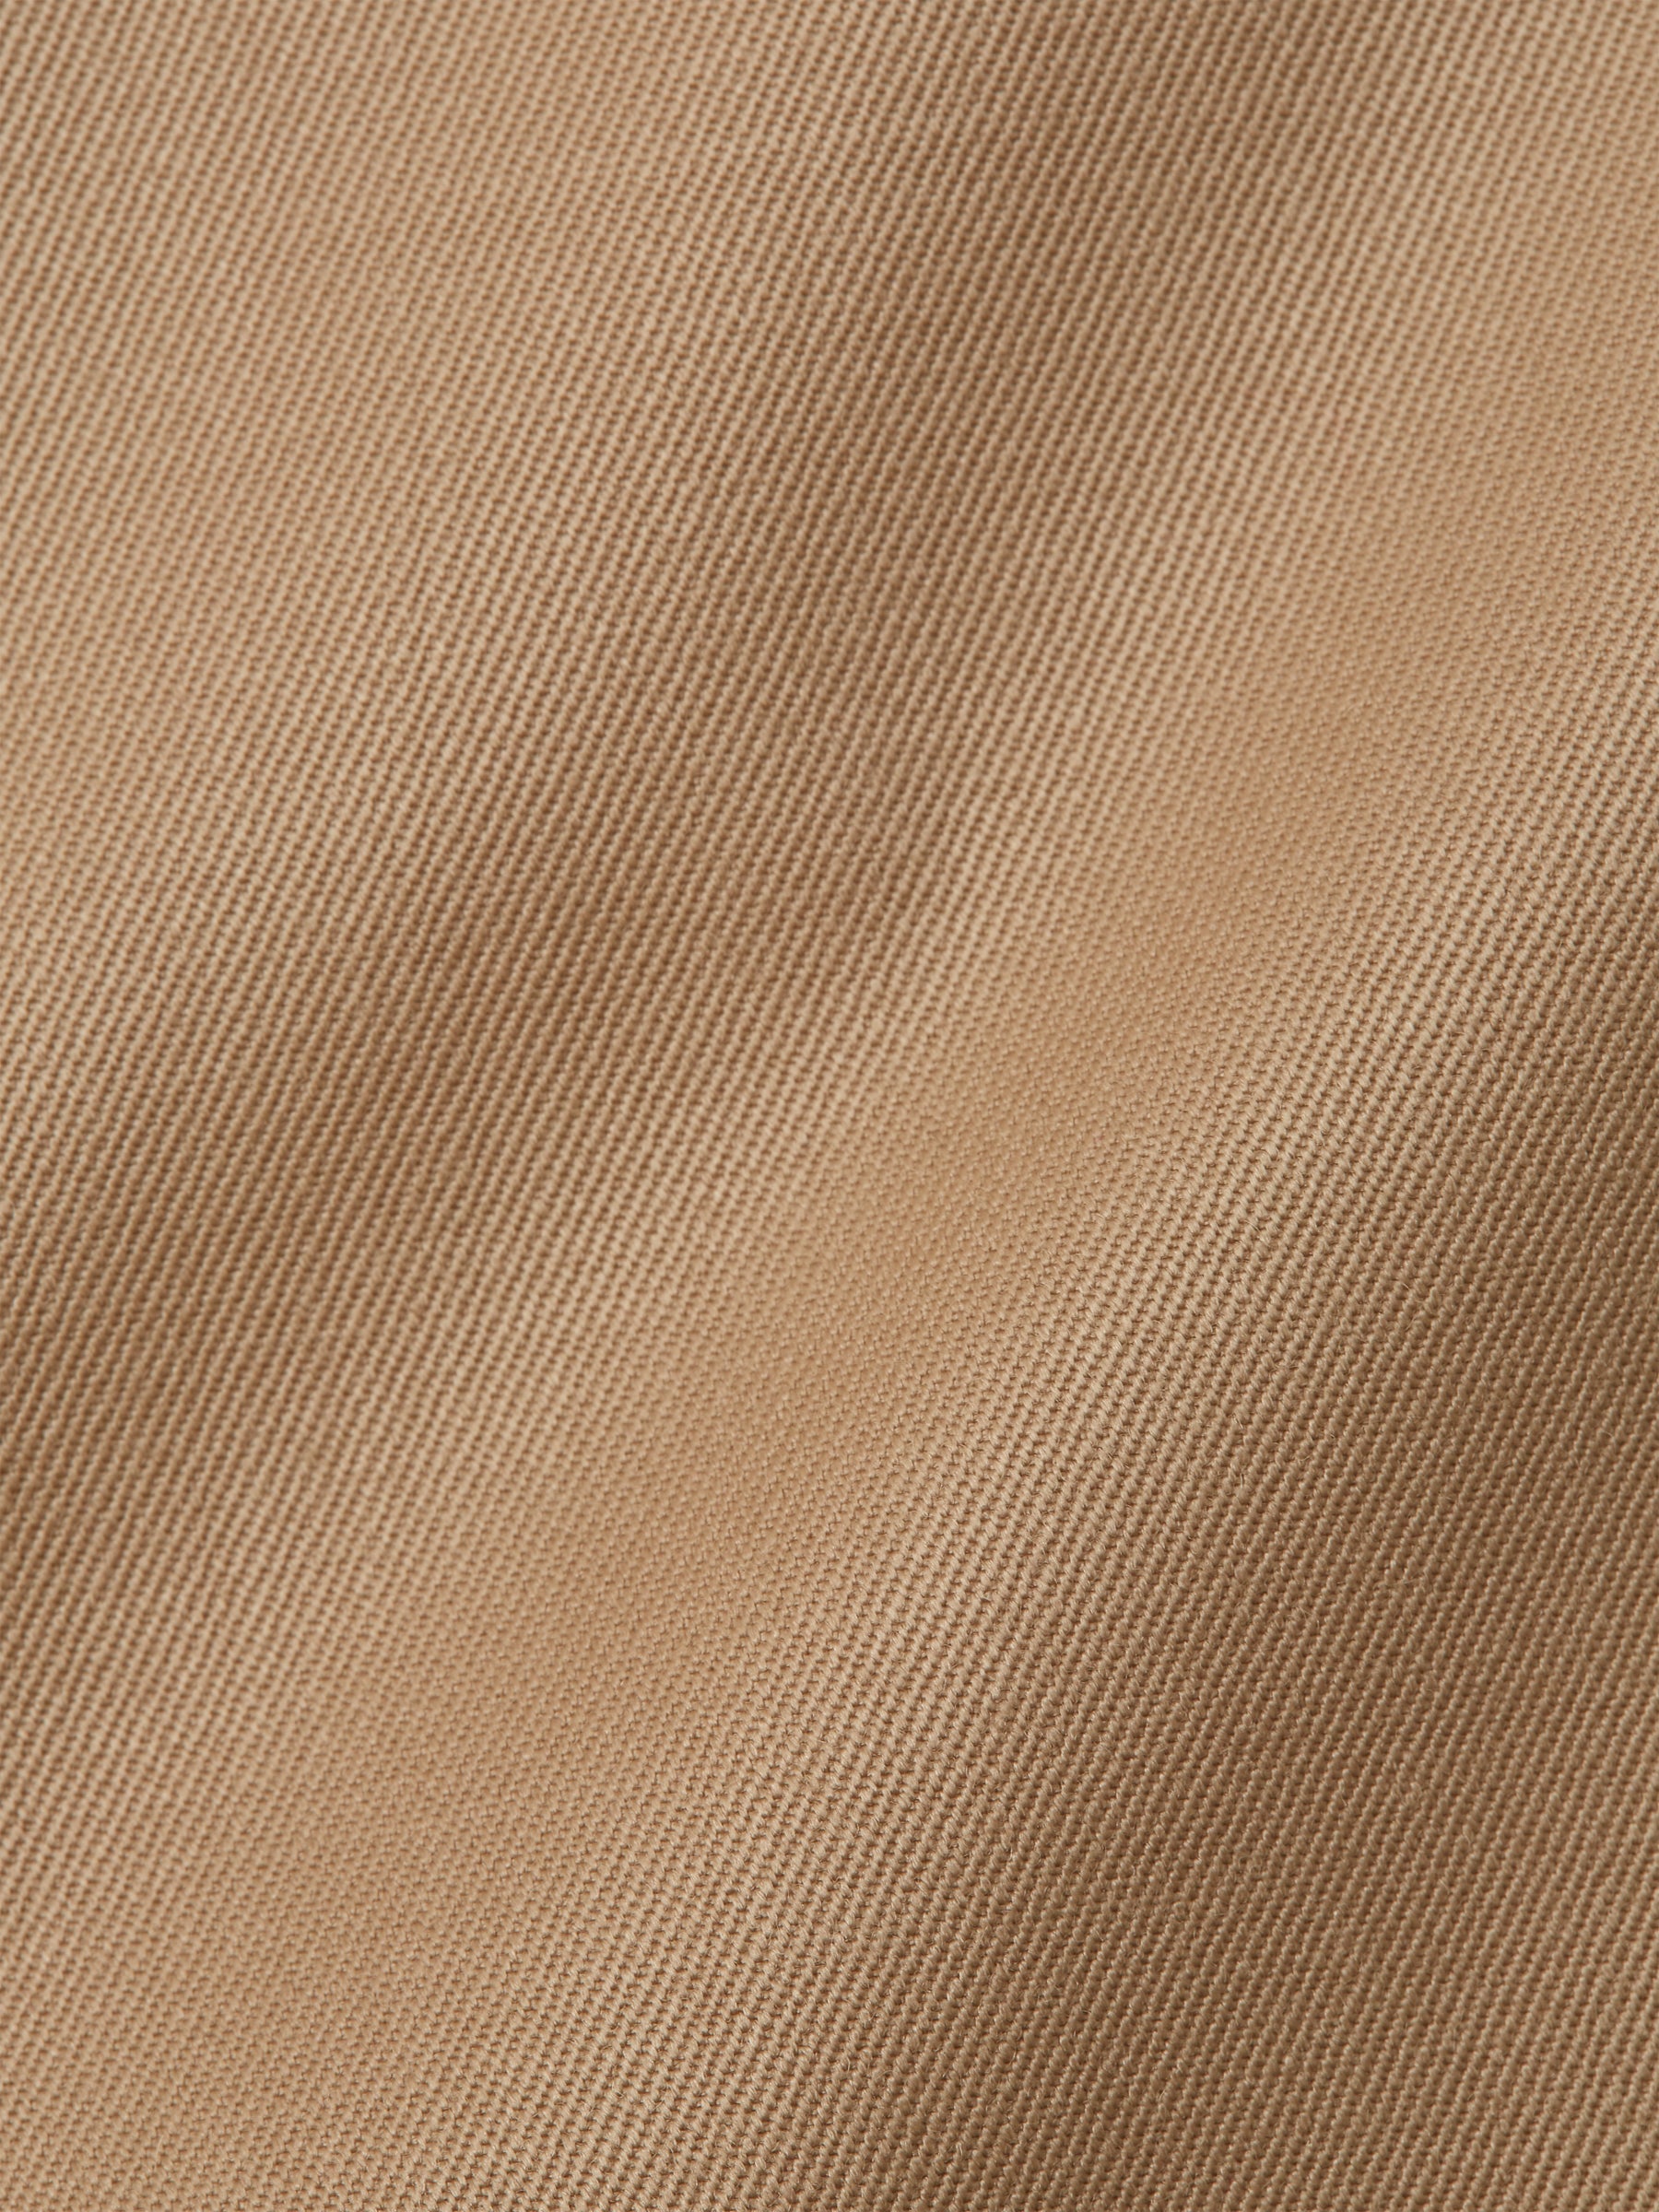 Beige Gabardine Wool Single Breasted 6 Button Notch Lapel Waistcoat